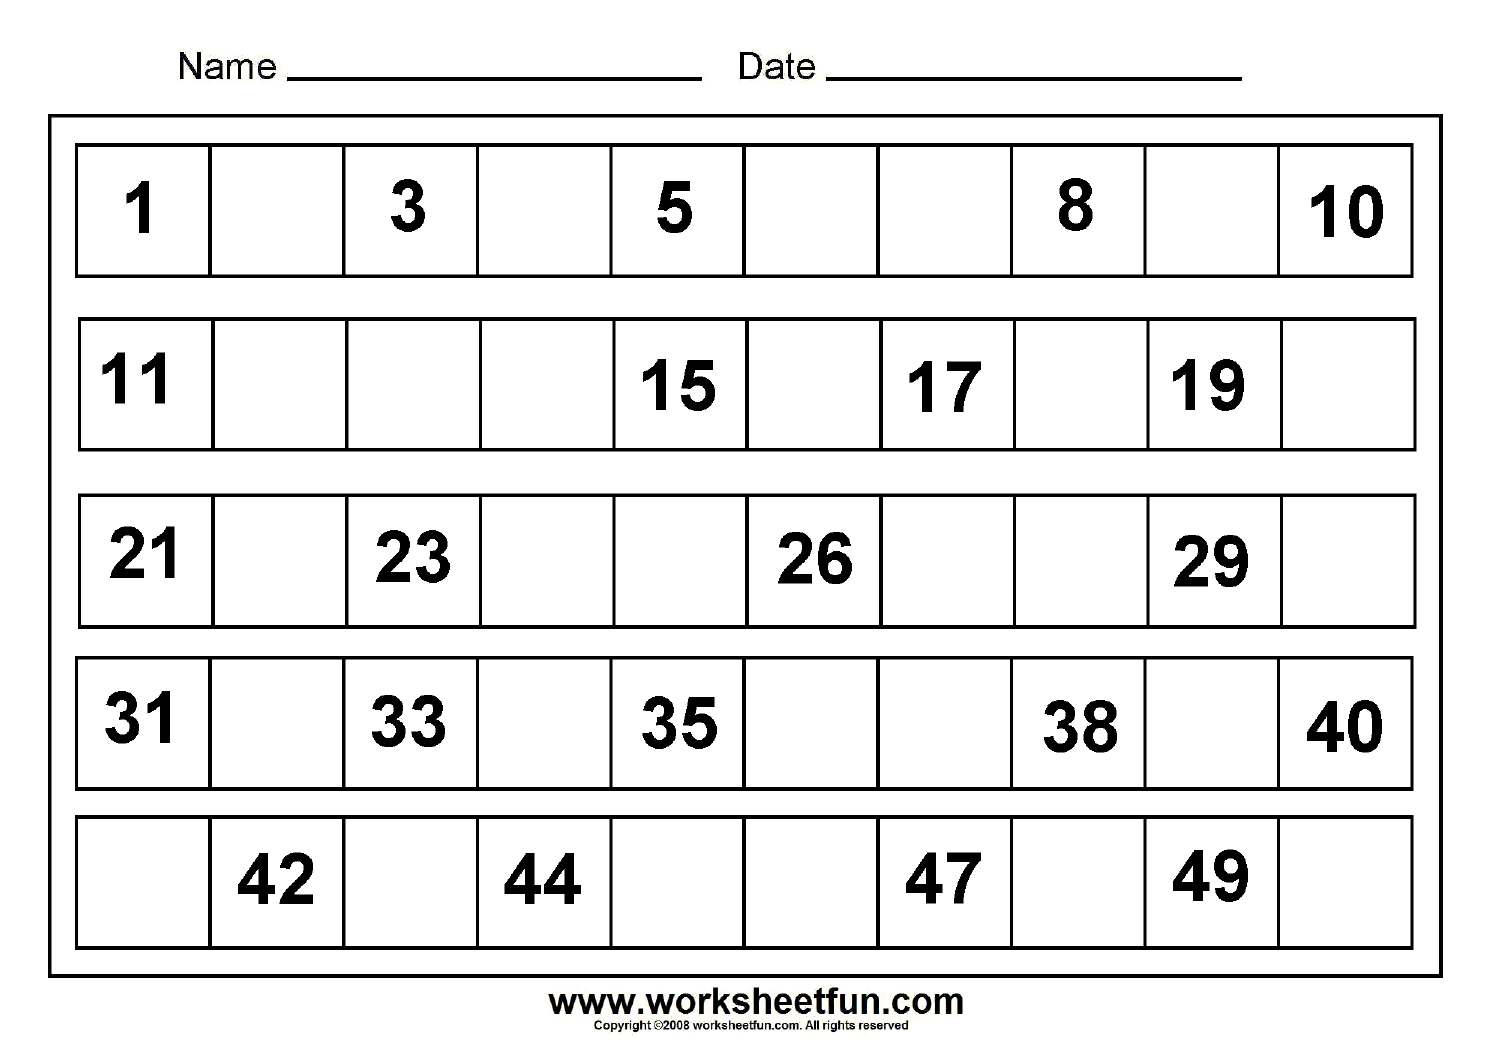 missing-numbers-1-to-50-8-worksheets-free-printable-worksheets